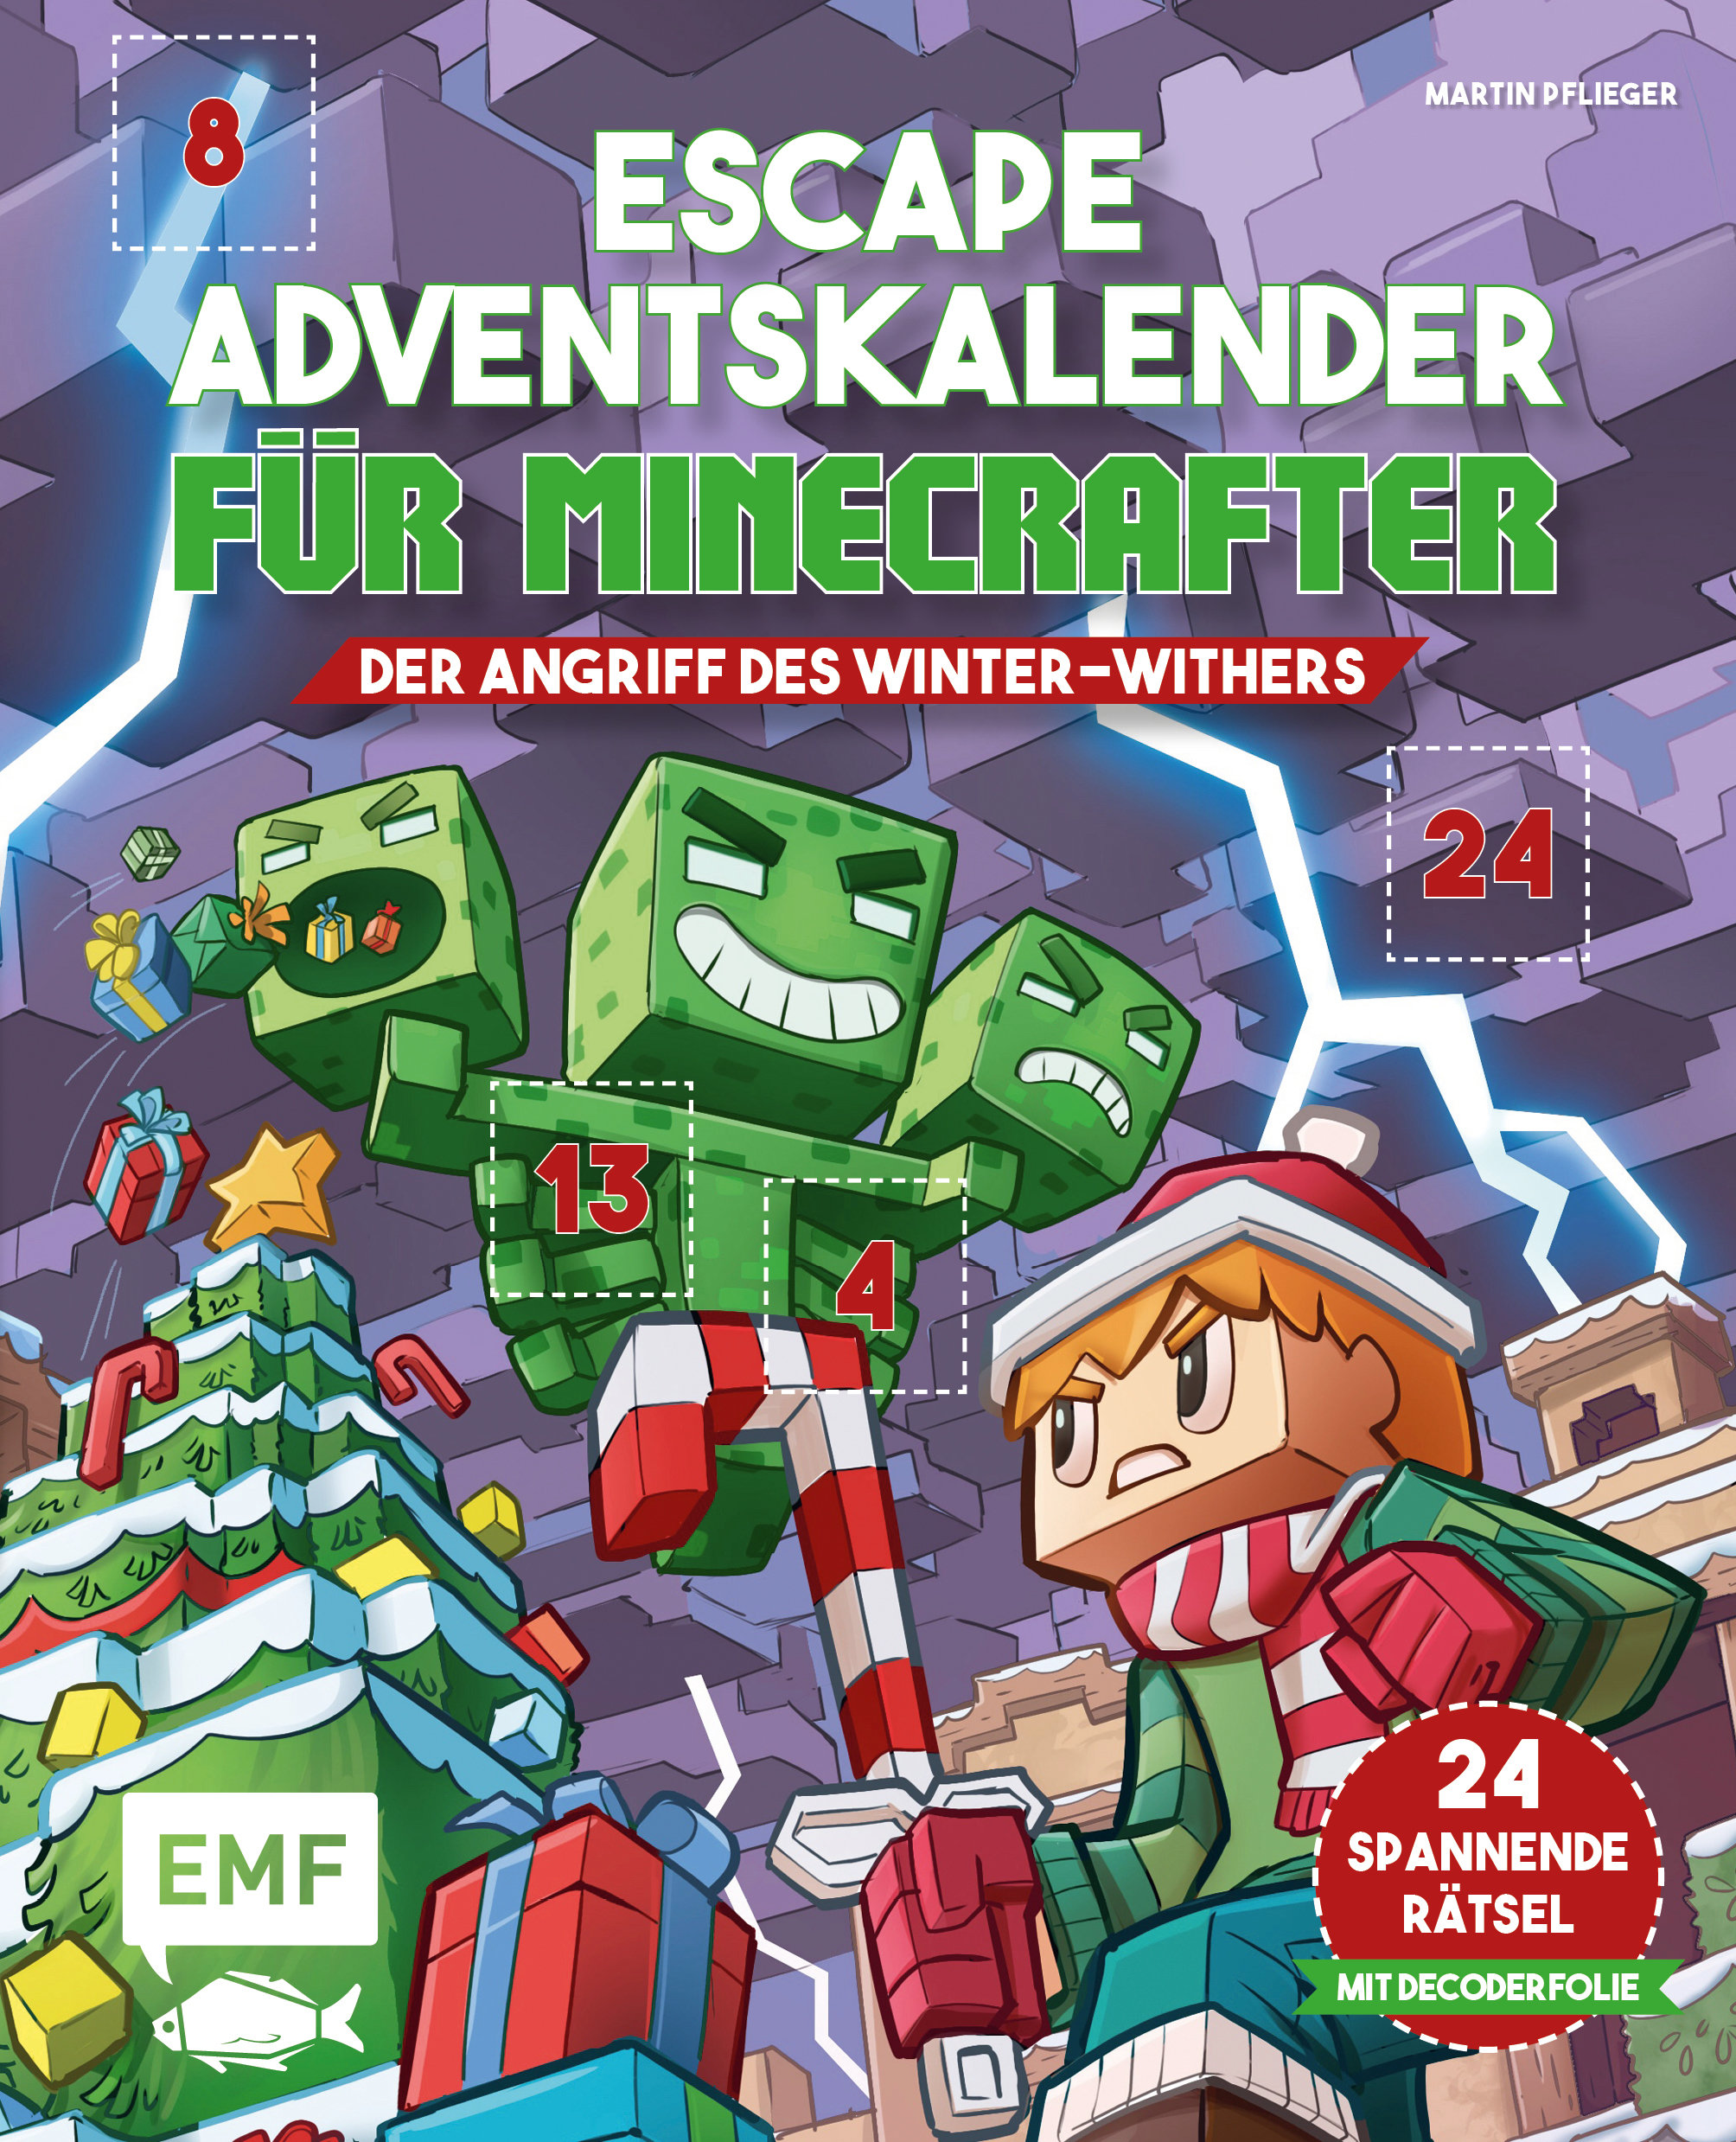 Buchcover "Escape Adventskalender für Minecrafter", EMF